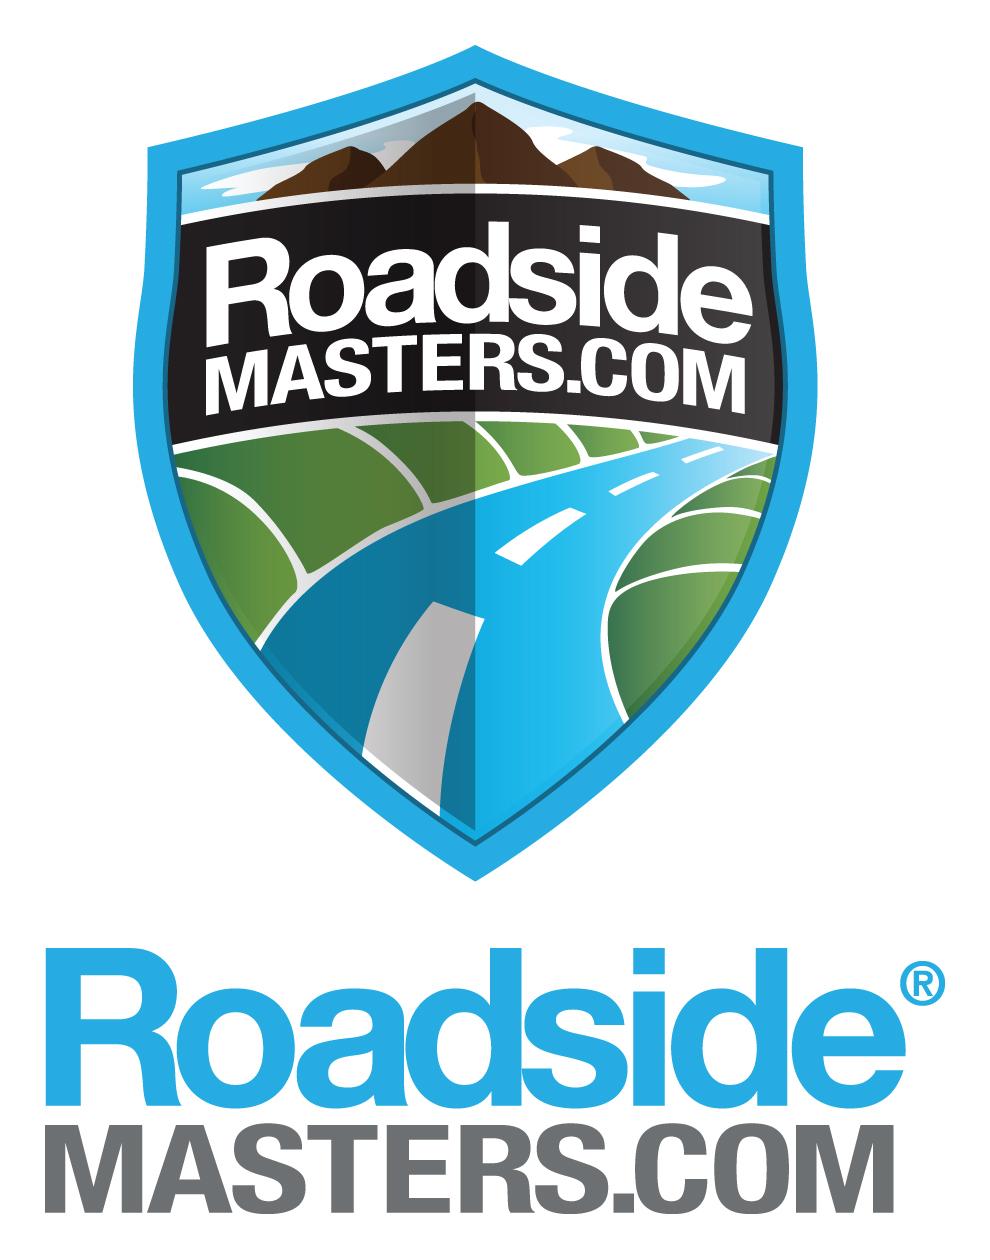 Roadside Service Logo - Penske Used Trucks to Offer Roadside Assistance Plan. blog.gopenske.com